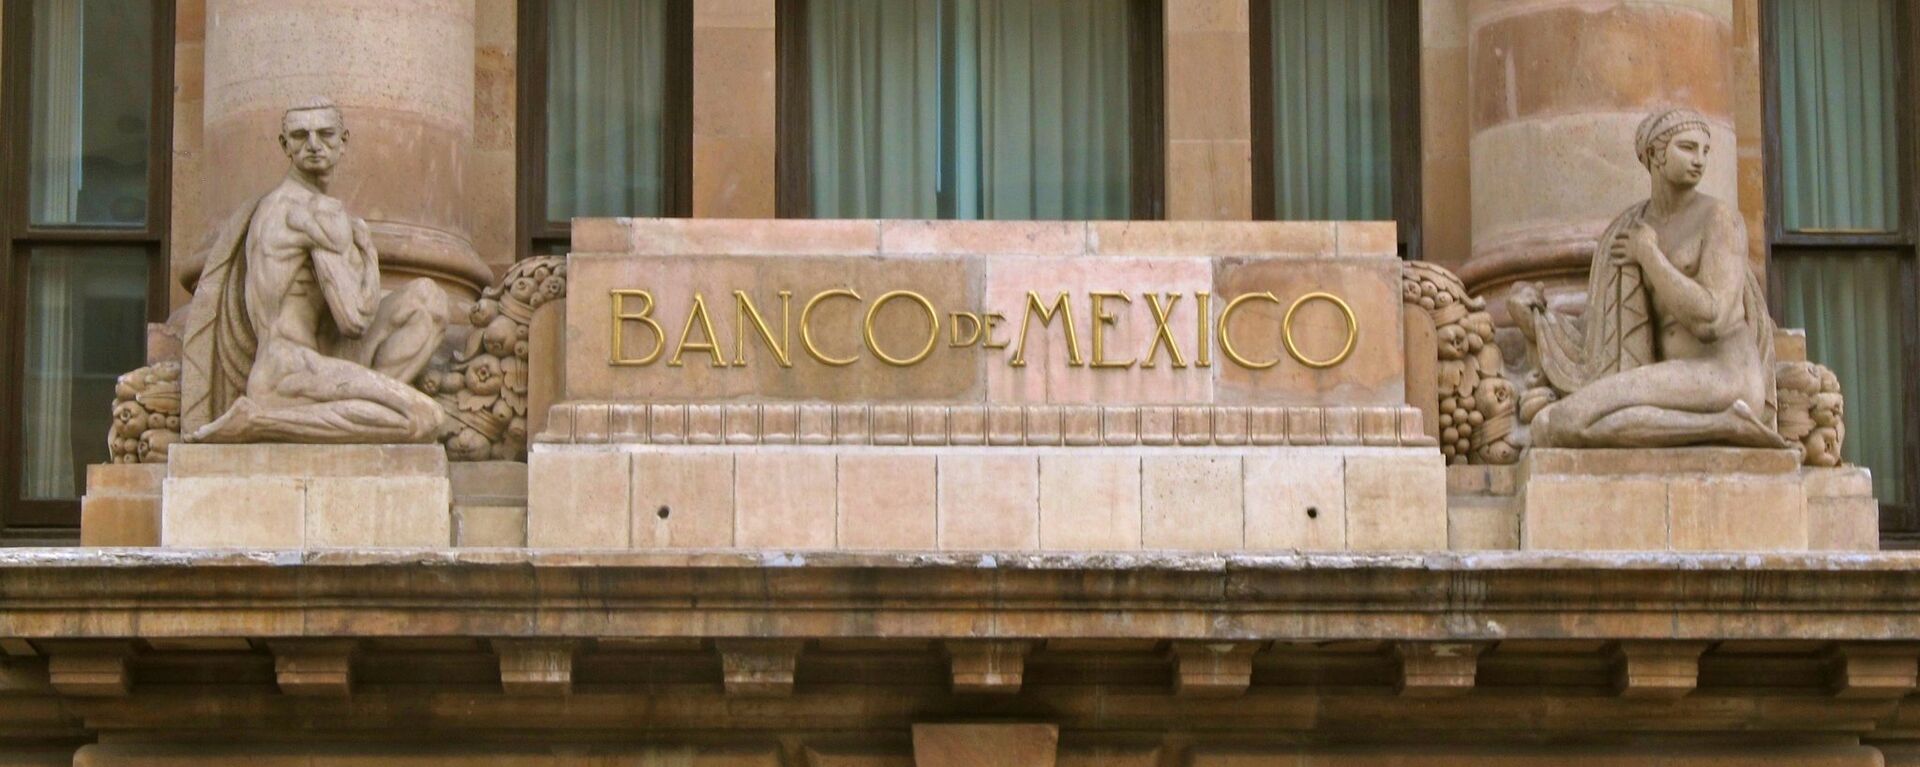 La fachada del Banco de México - Sputnik Mundo, 1920, 09.06.2021